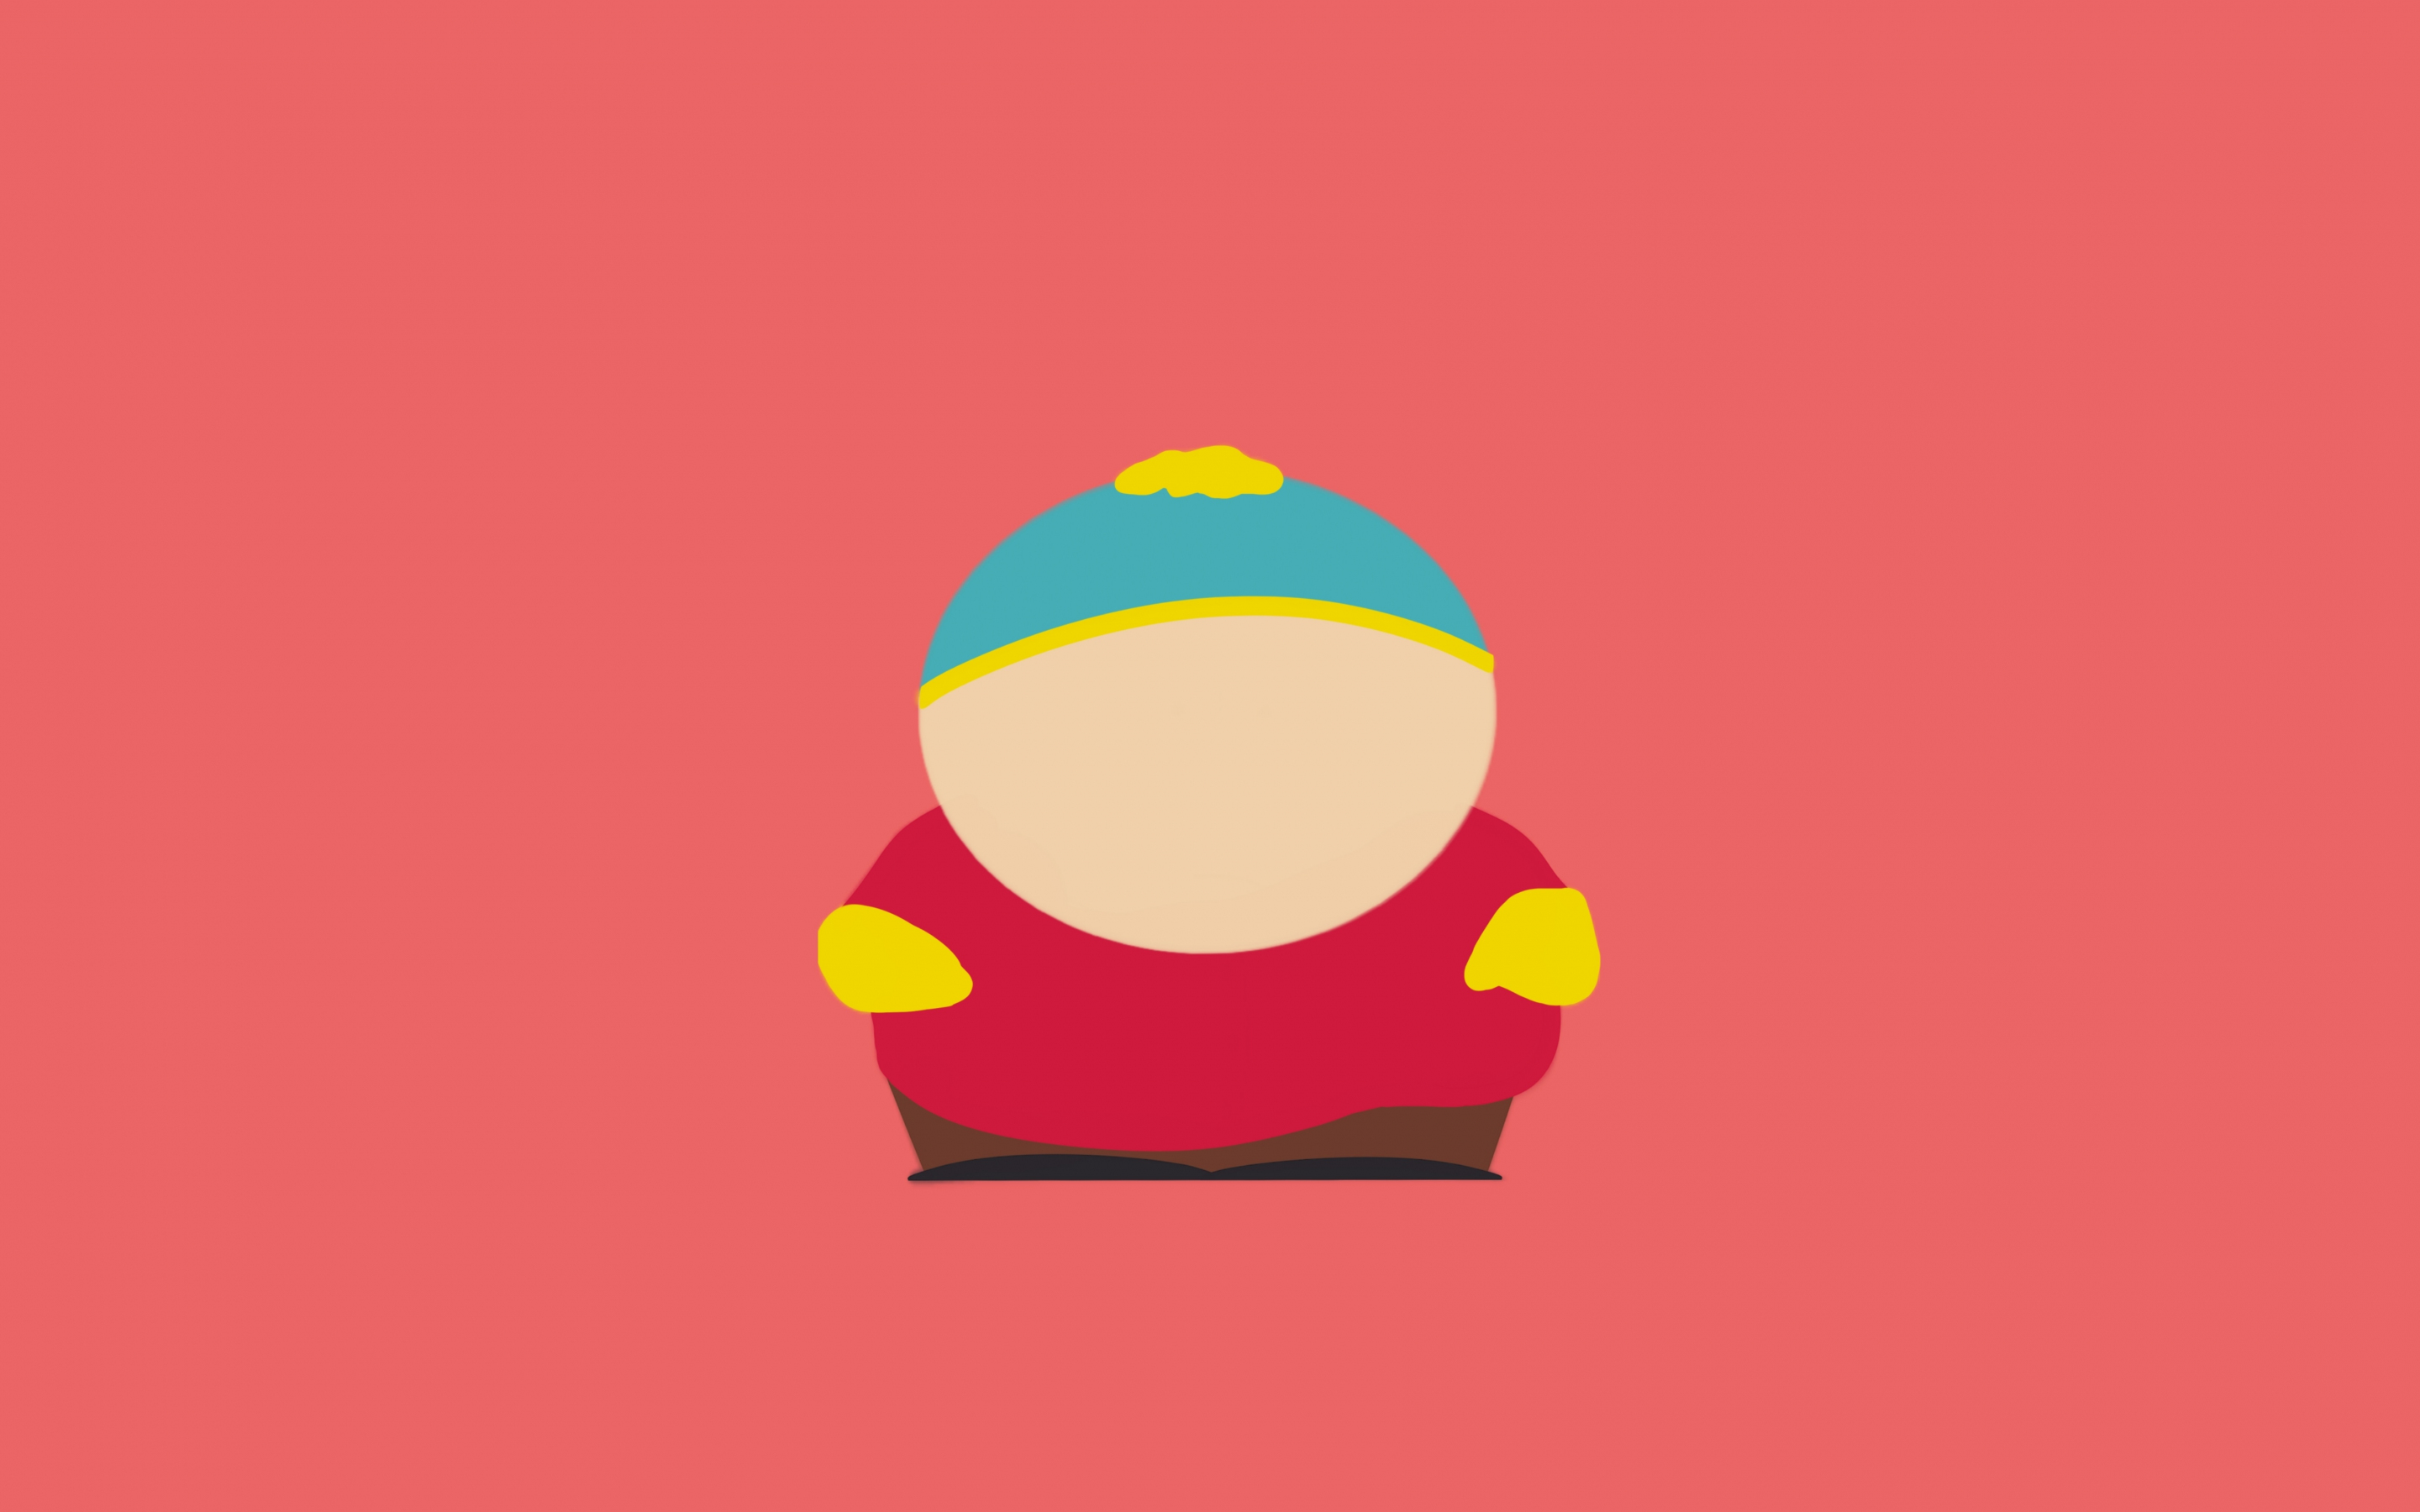 Eric Cartman, south park, tv show, minimal, 2880x1800 wallpaper